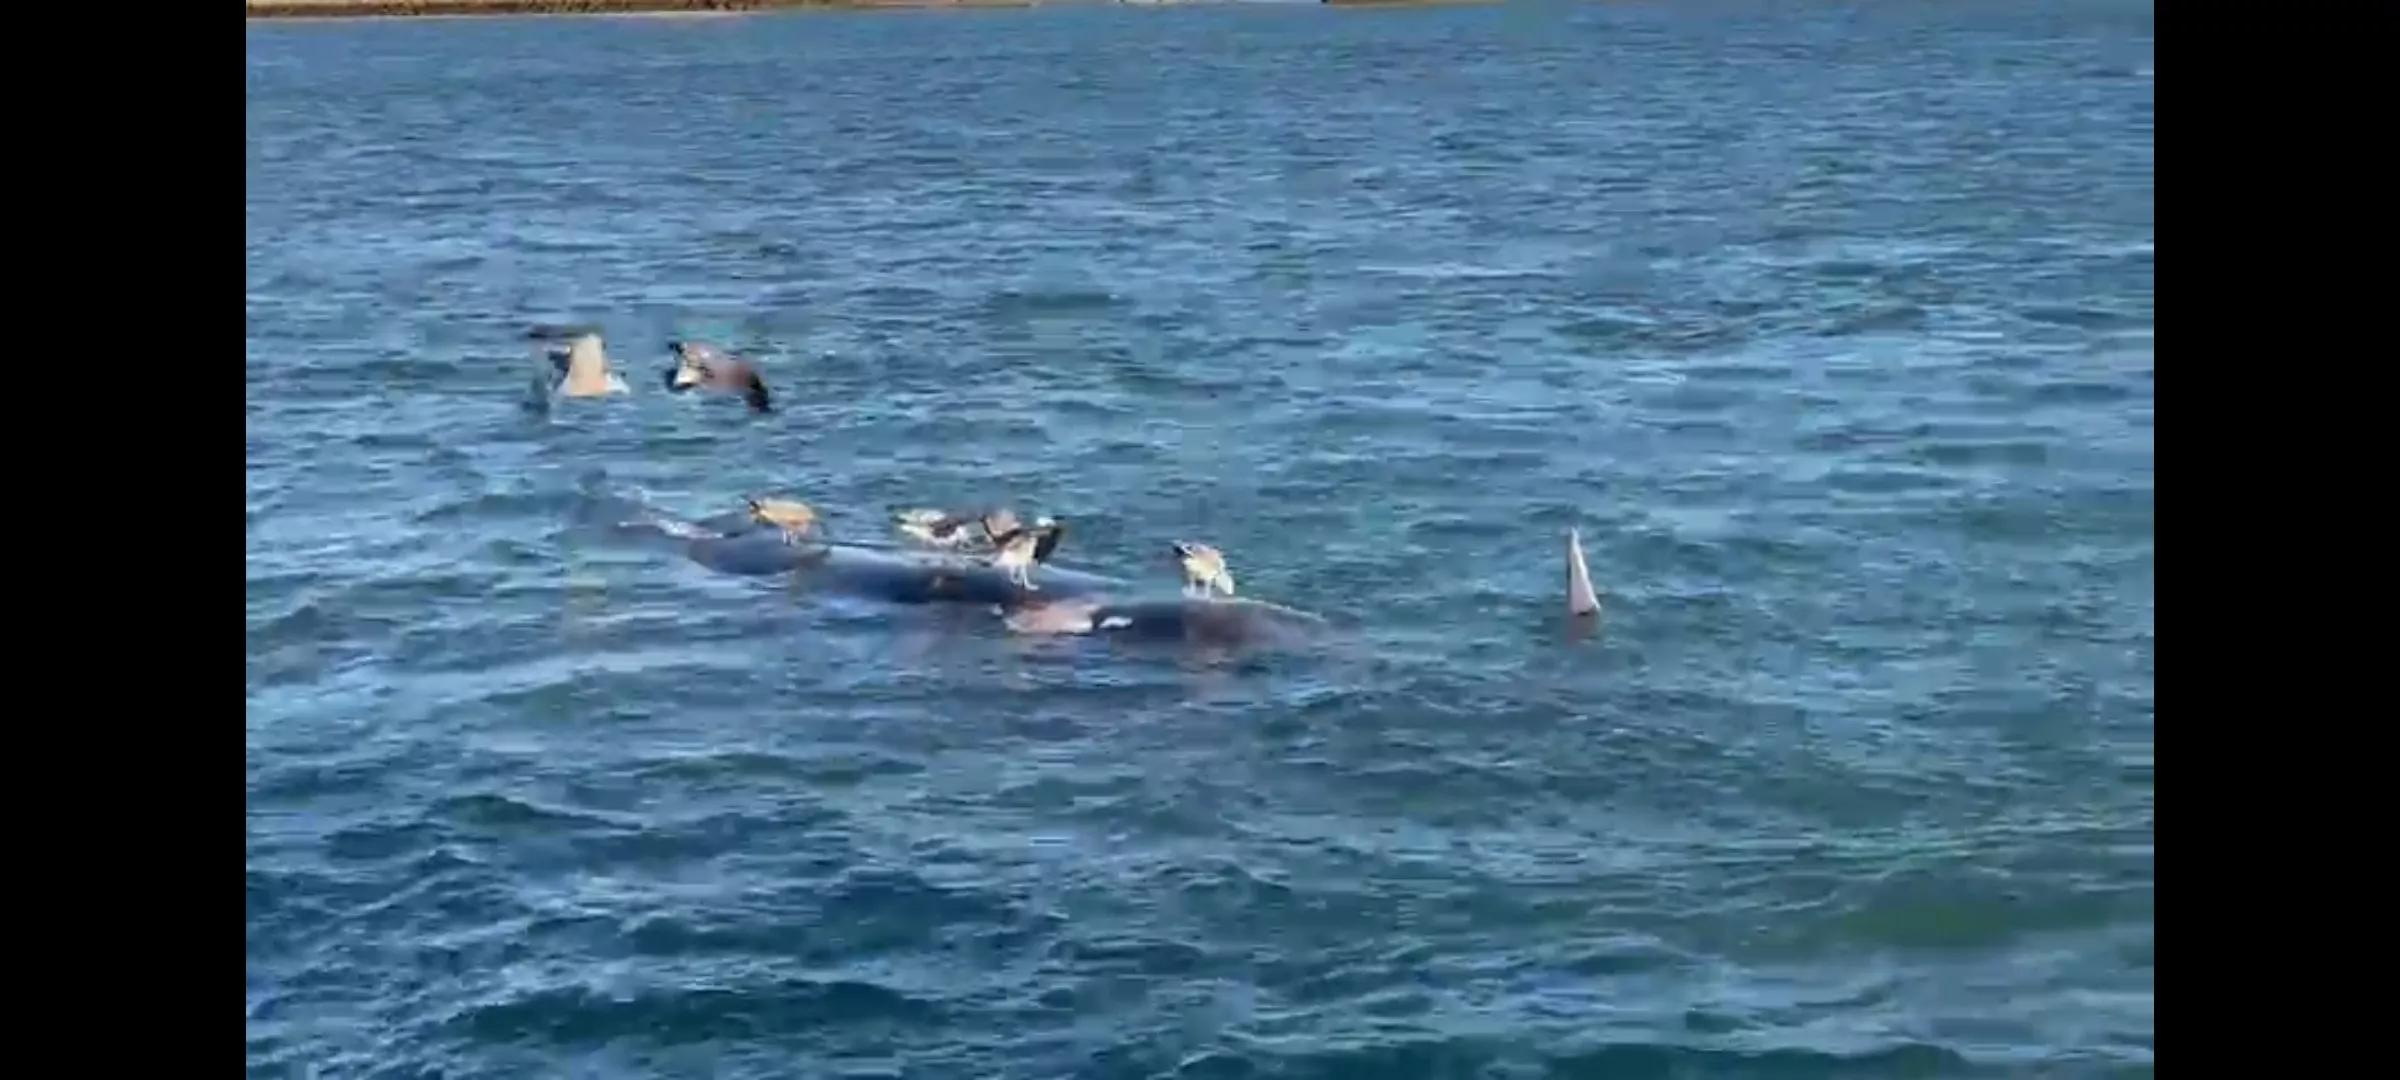 El cuerpo del cetáceo flotaba frente al Club Náutico de Cádiz